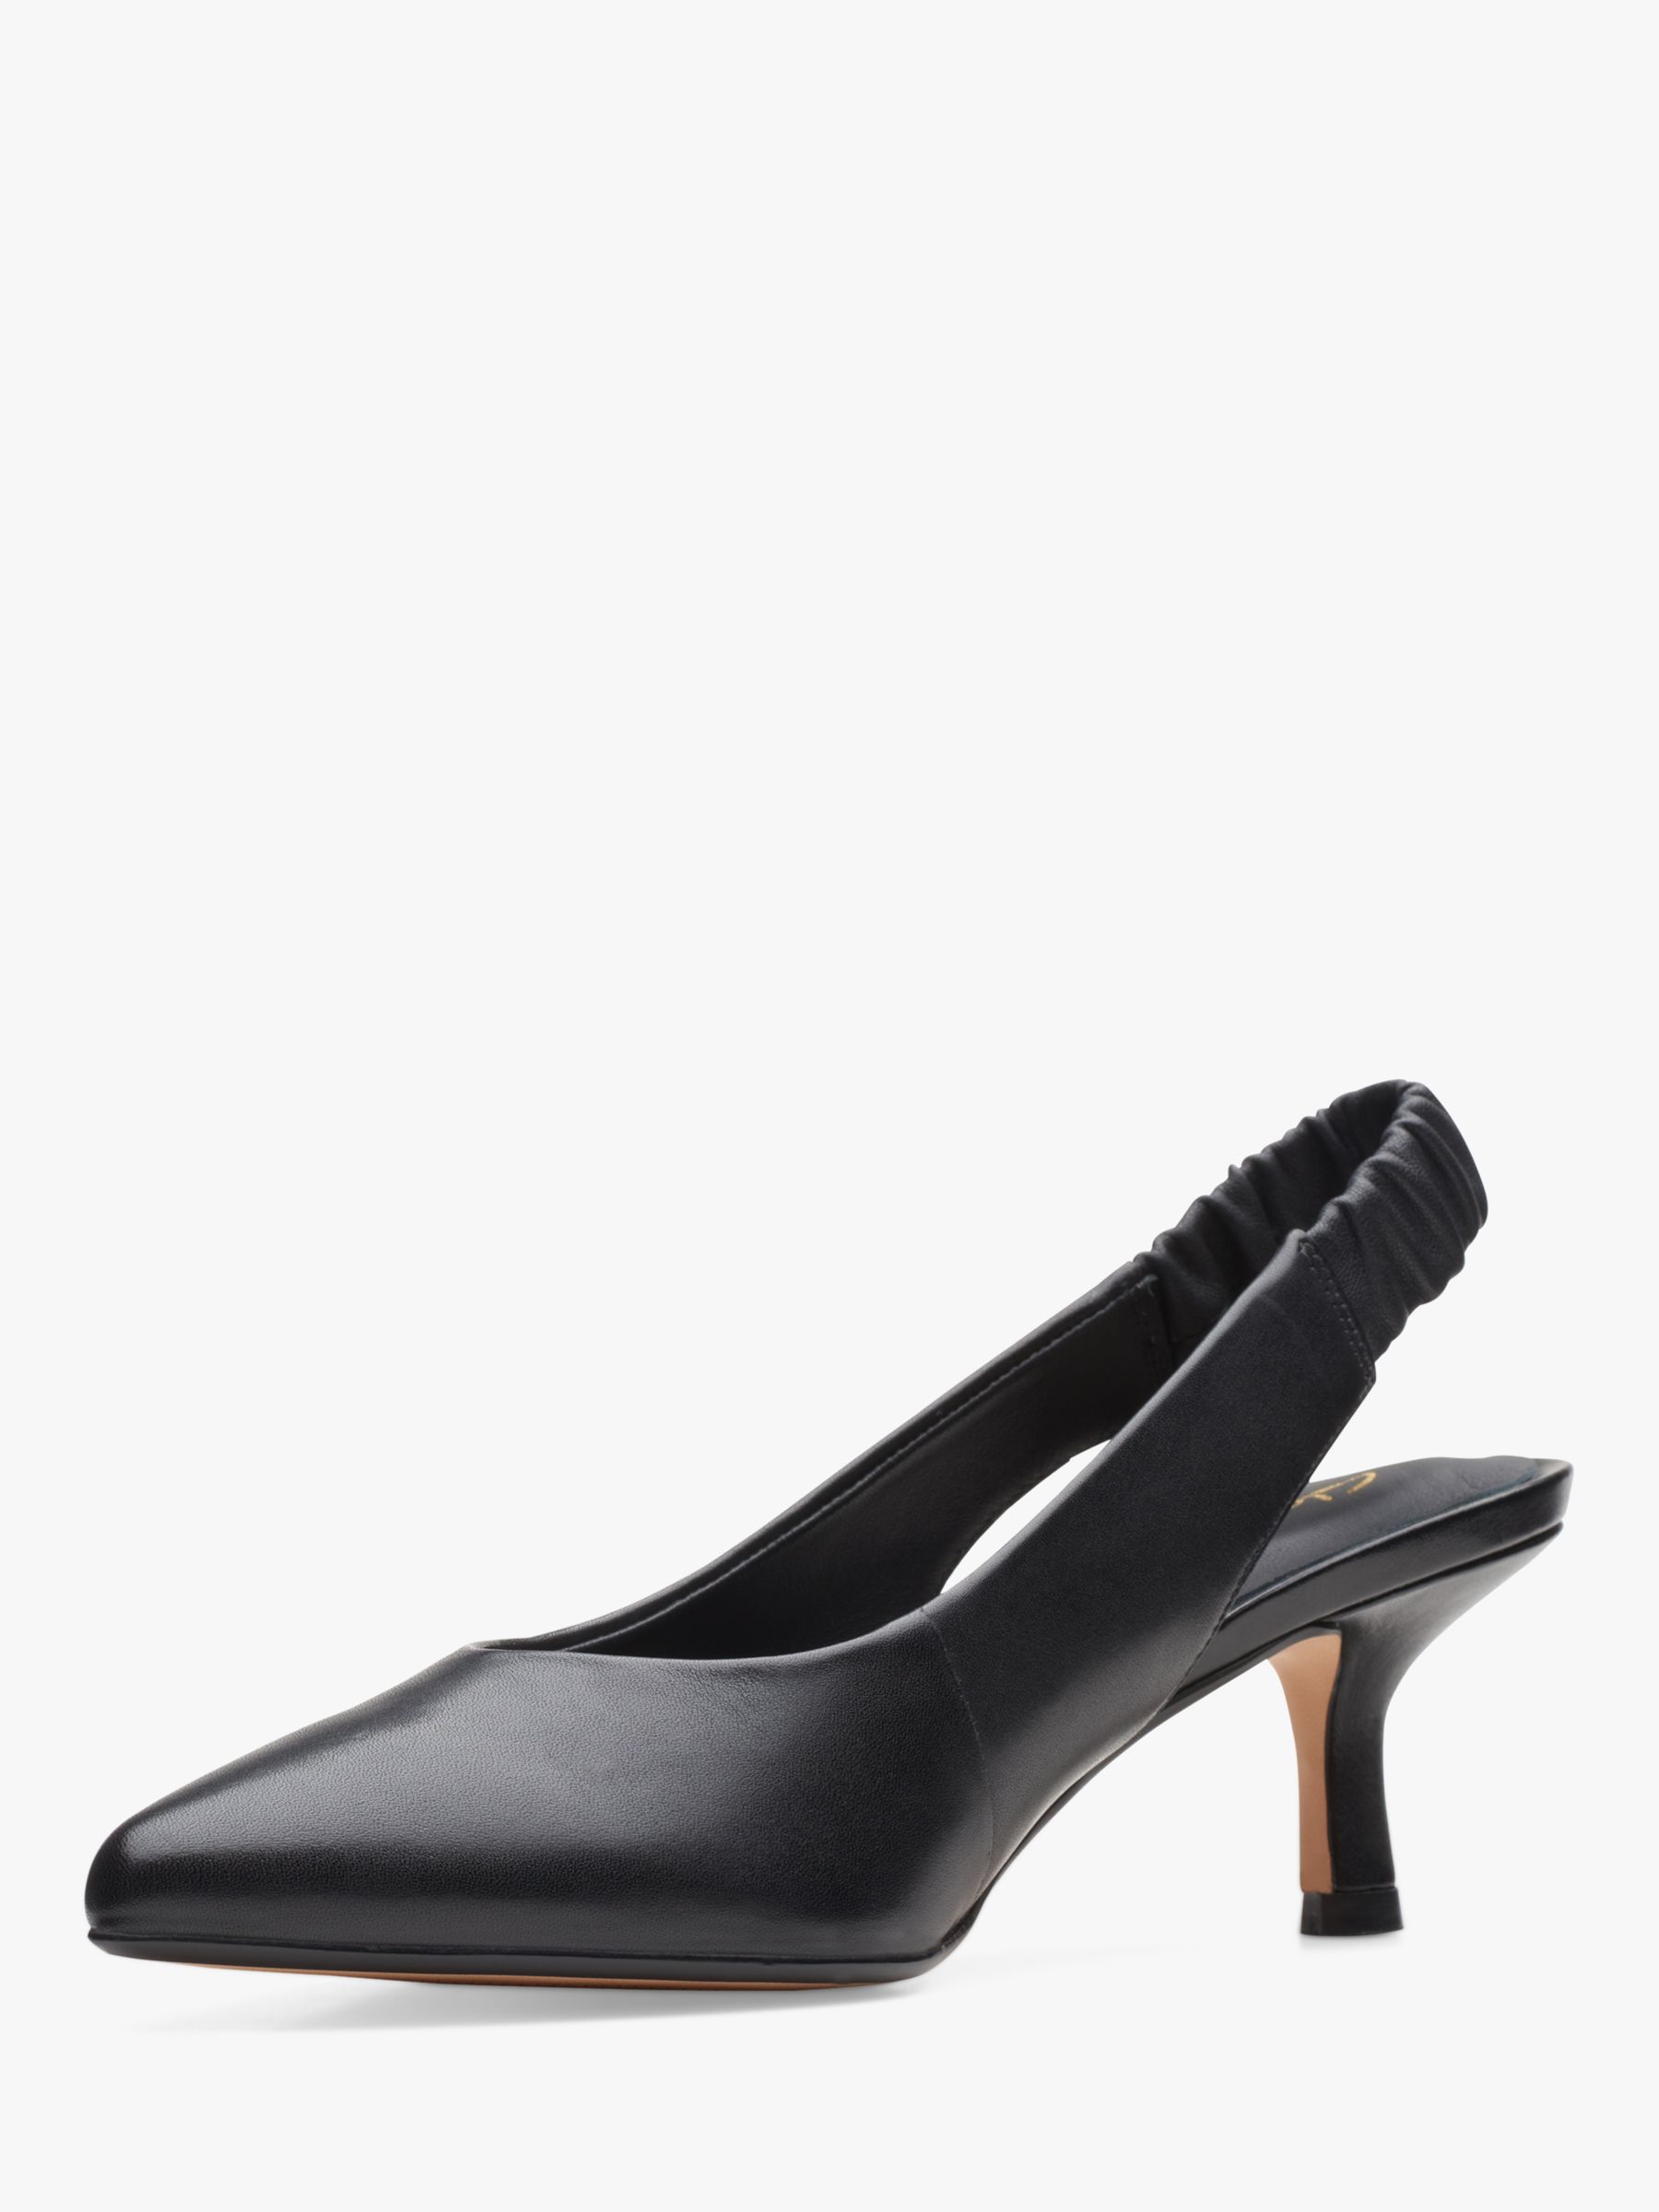 Clarks Violet55 Leather Slingback Court Shoes, Black at John Lewis ...